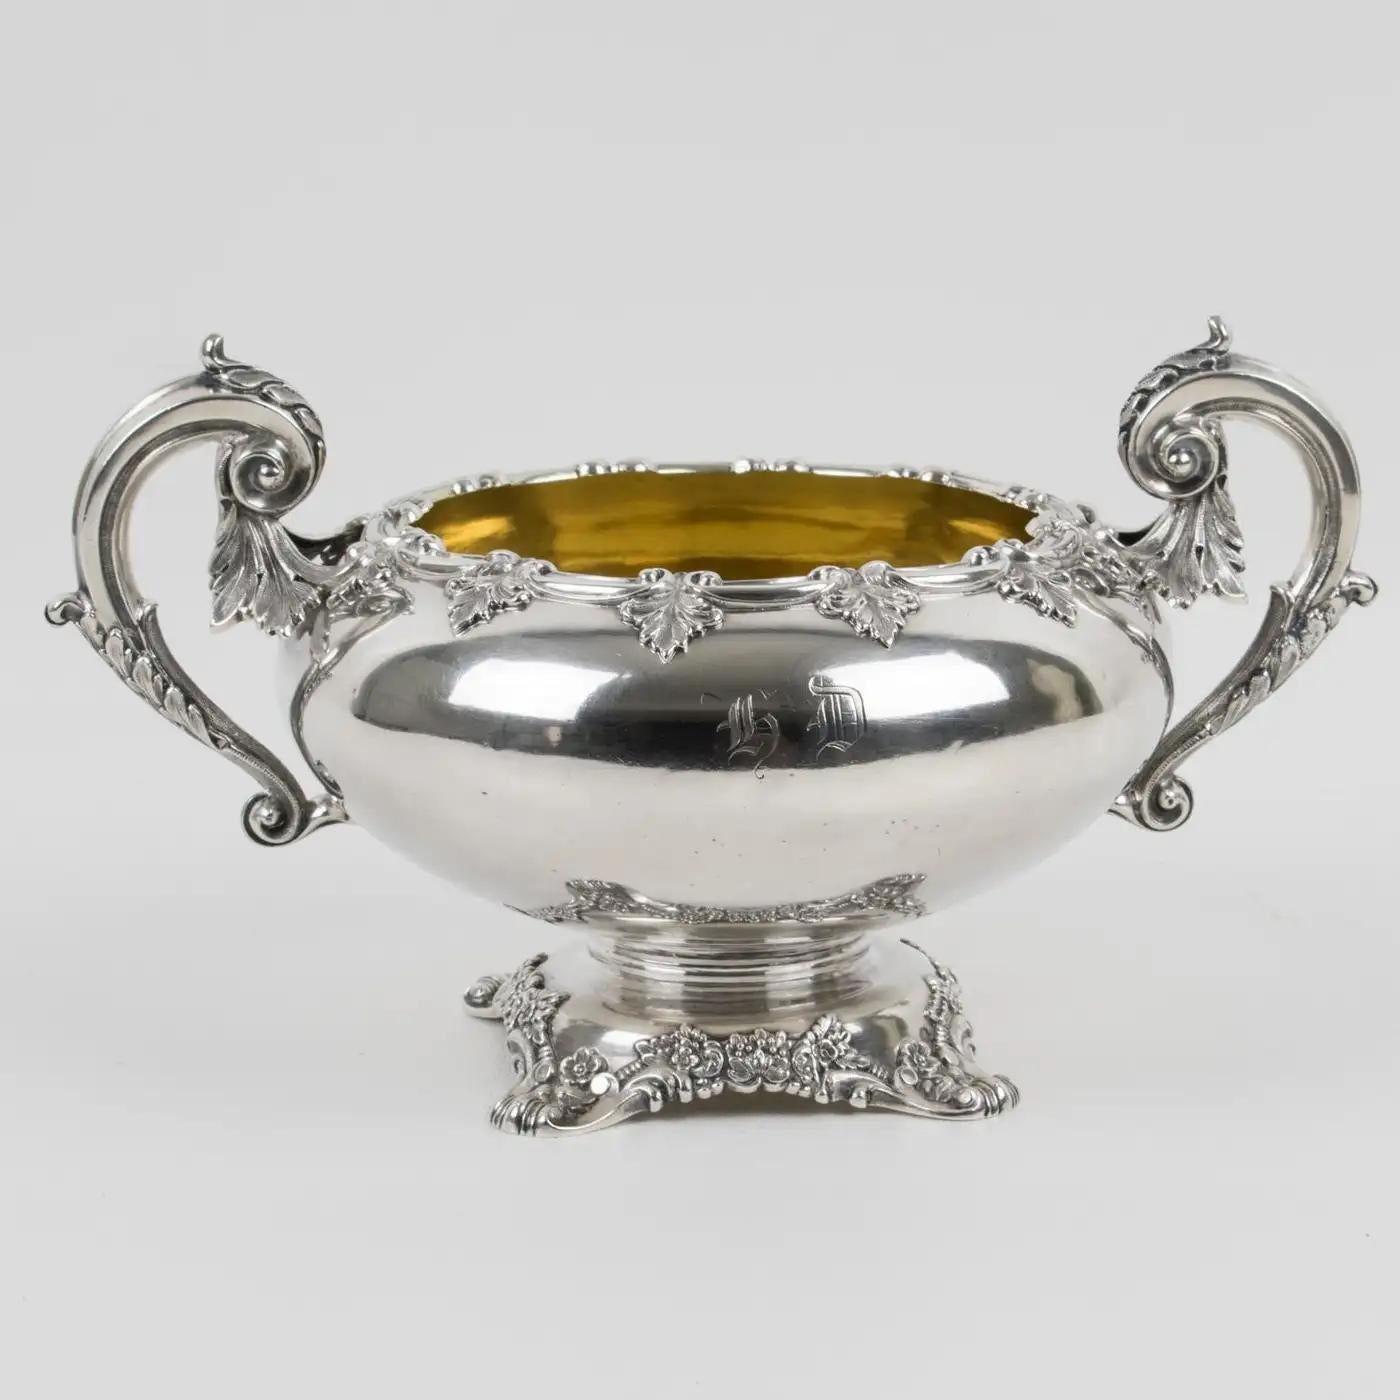 Il s'agit d'une coupe décorative en argent sterling du début du XIXe siècle, conçue et fabriquée par Odiot, à Paris. La forme arrondie reposant sur un piédestal floral est ornée d'un monogramme 